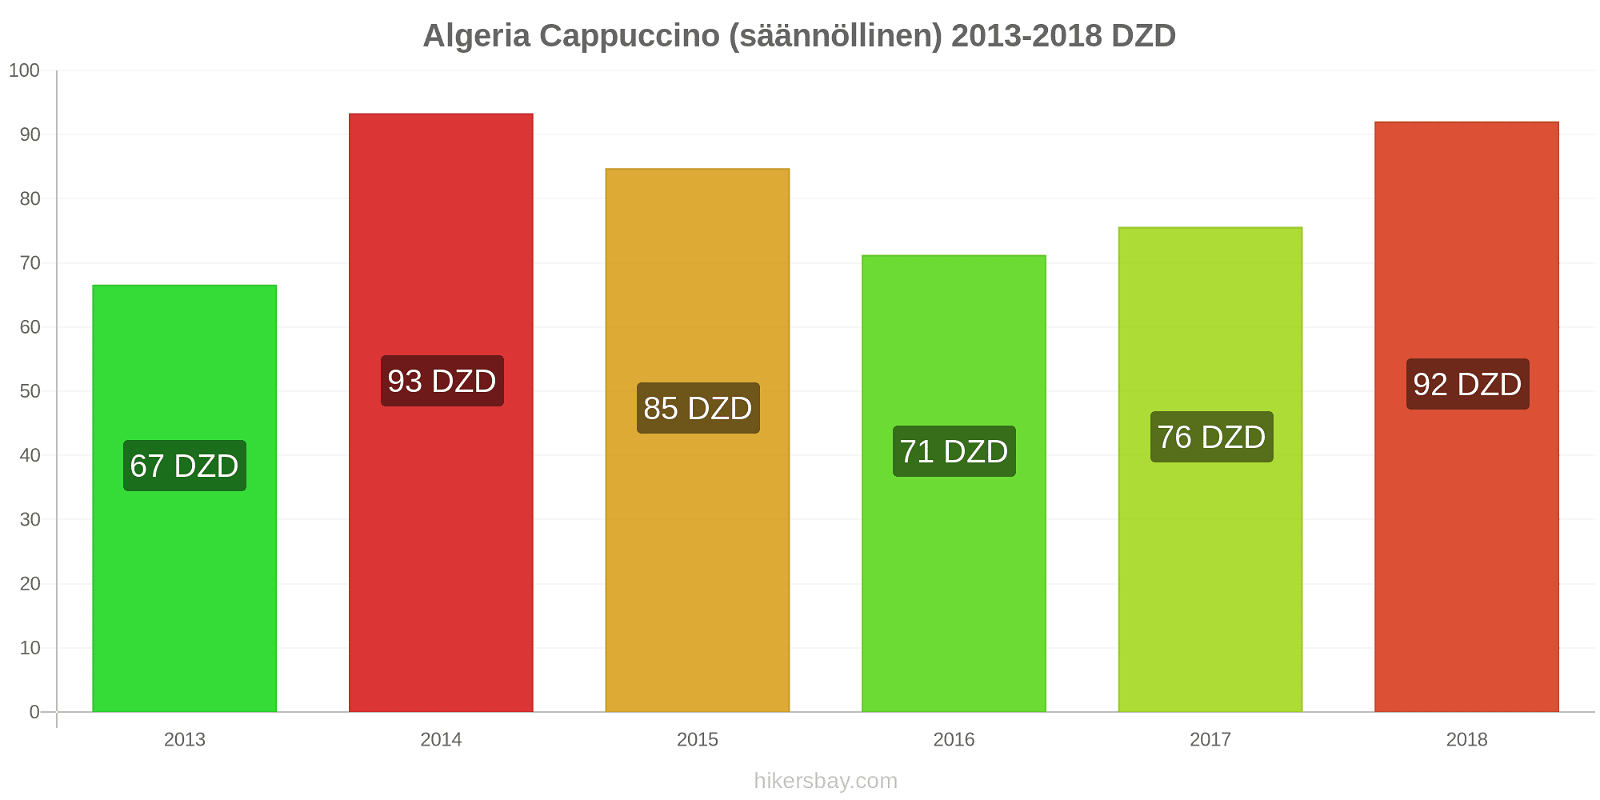 Algeria hintojen muutokset Cappuccino (säännöllinen) hikersbay.com